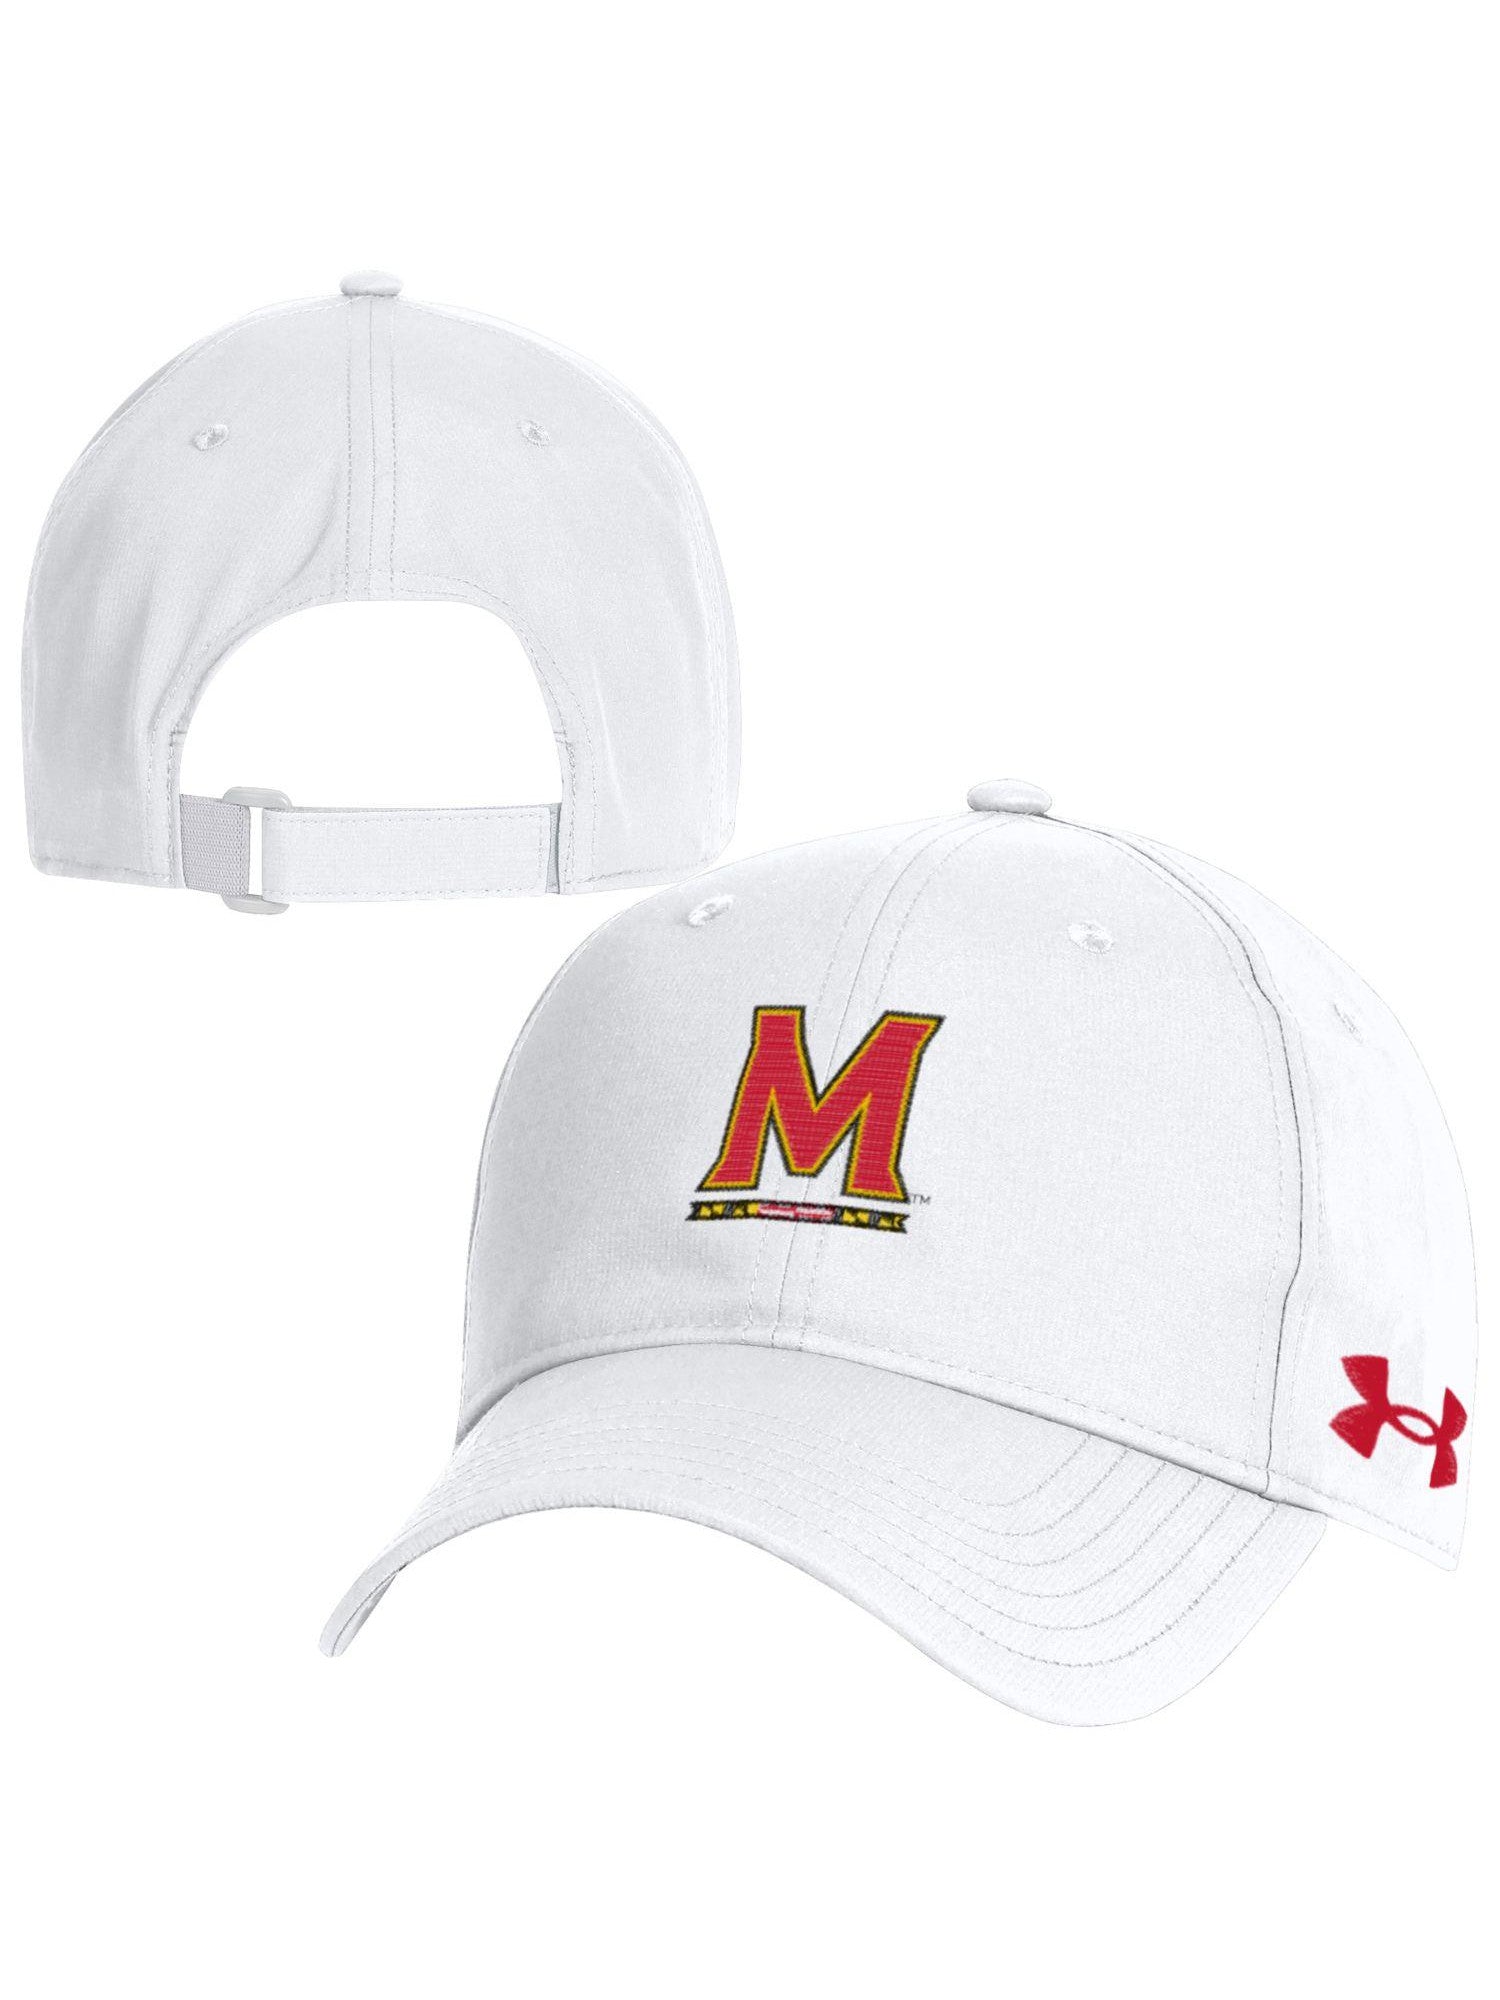 of Maryland (White) – University Cap Under Armor Maryland Gifts Baseball